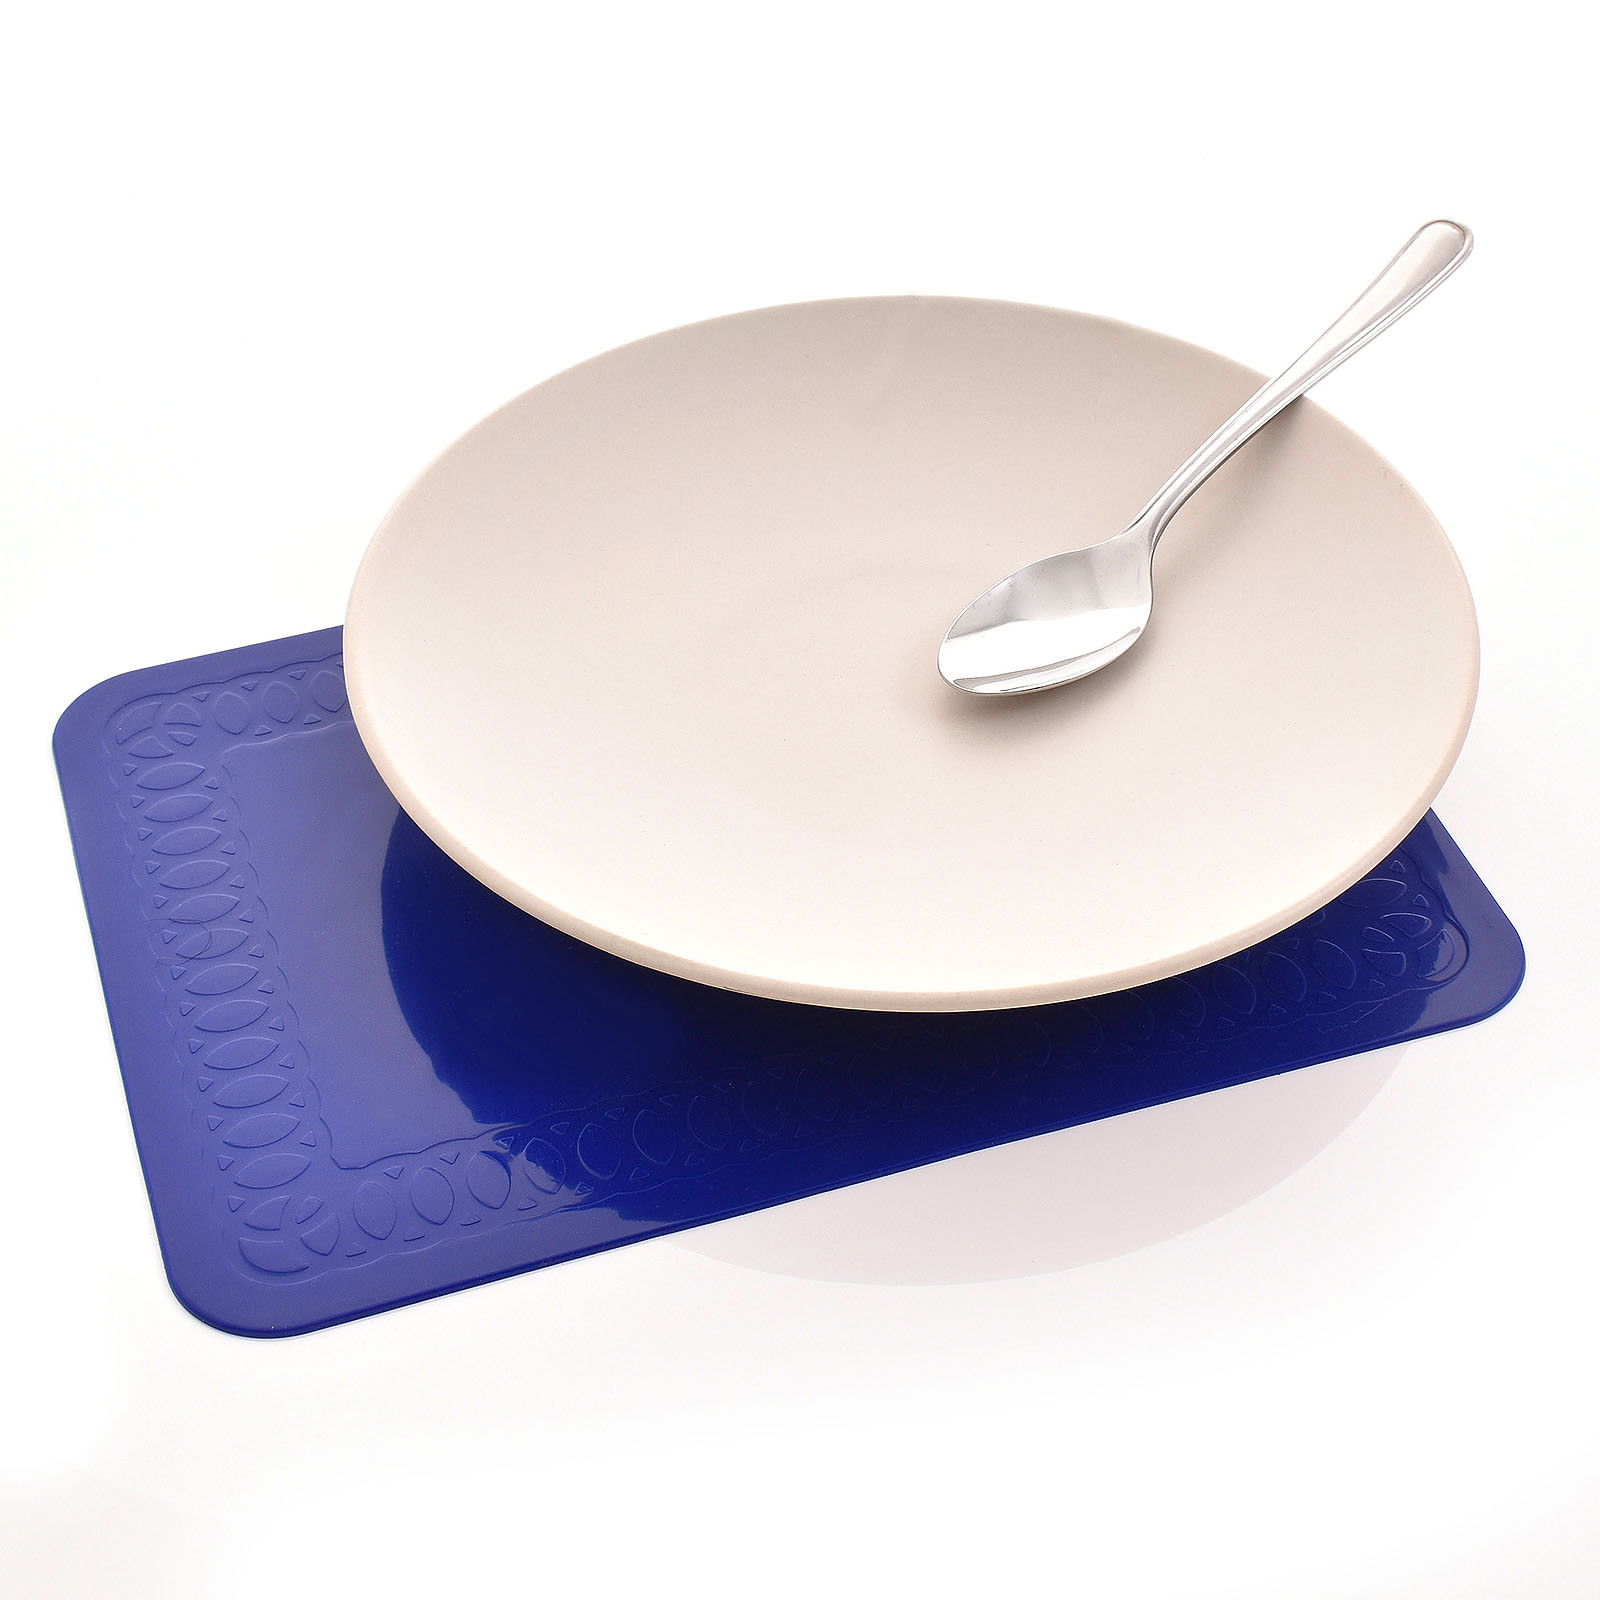 Tenura Silicone Non-Slip Table Mat, Dining